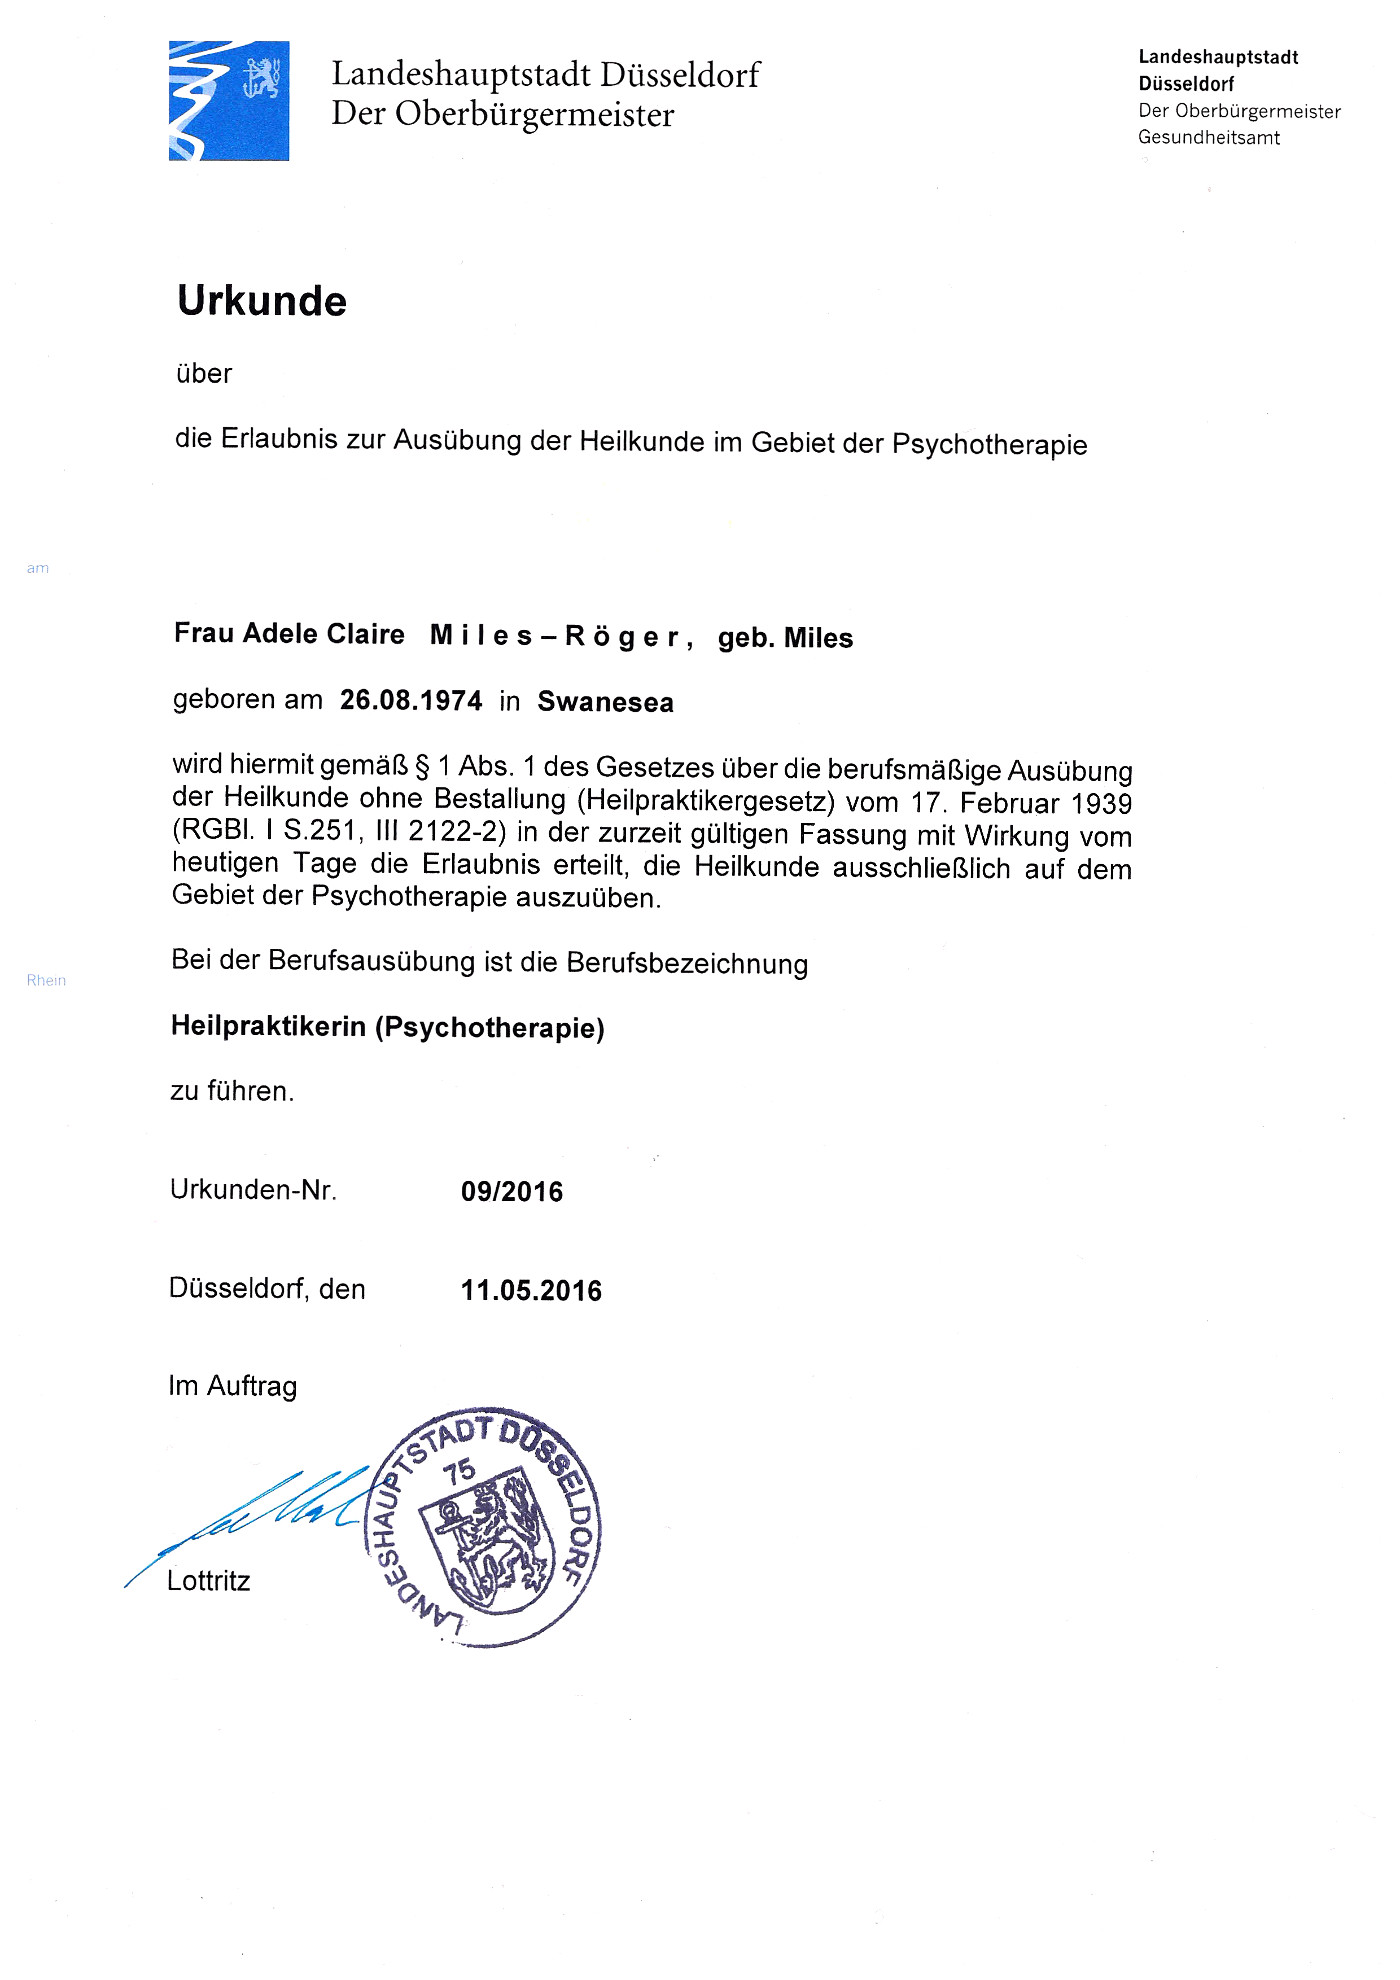 Urkunde über die Erlaubnis zur Ausübung der Heilkunde im Gebiet der Psychotherapie - Adele Miles-Röger